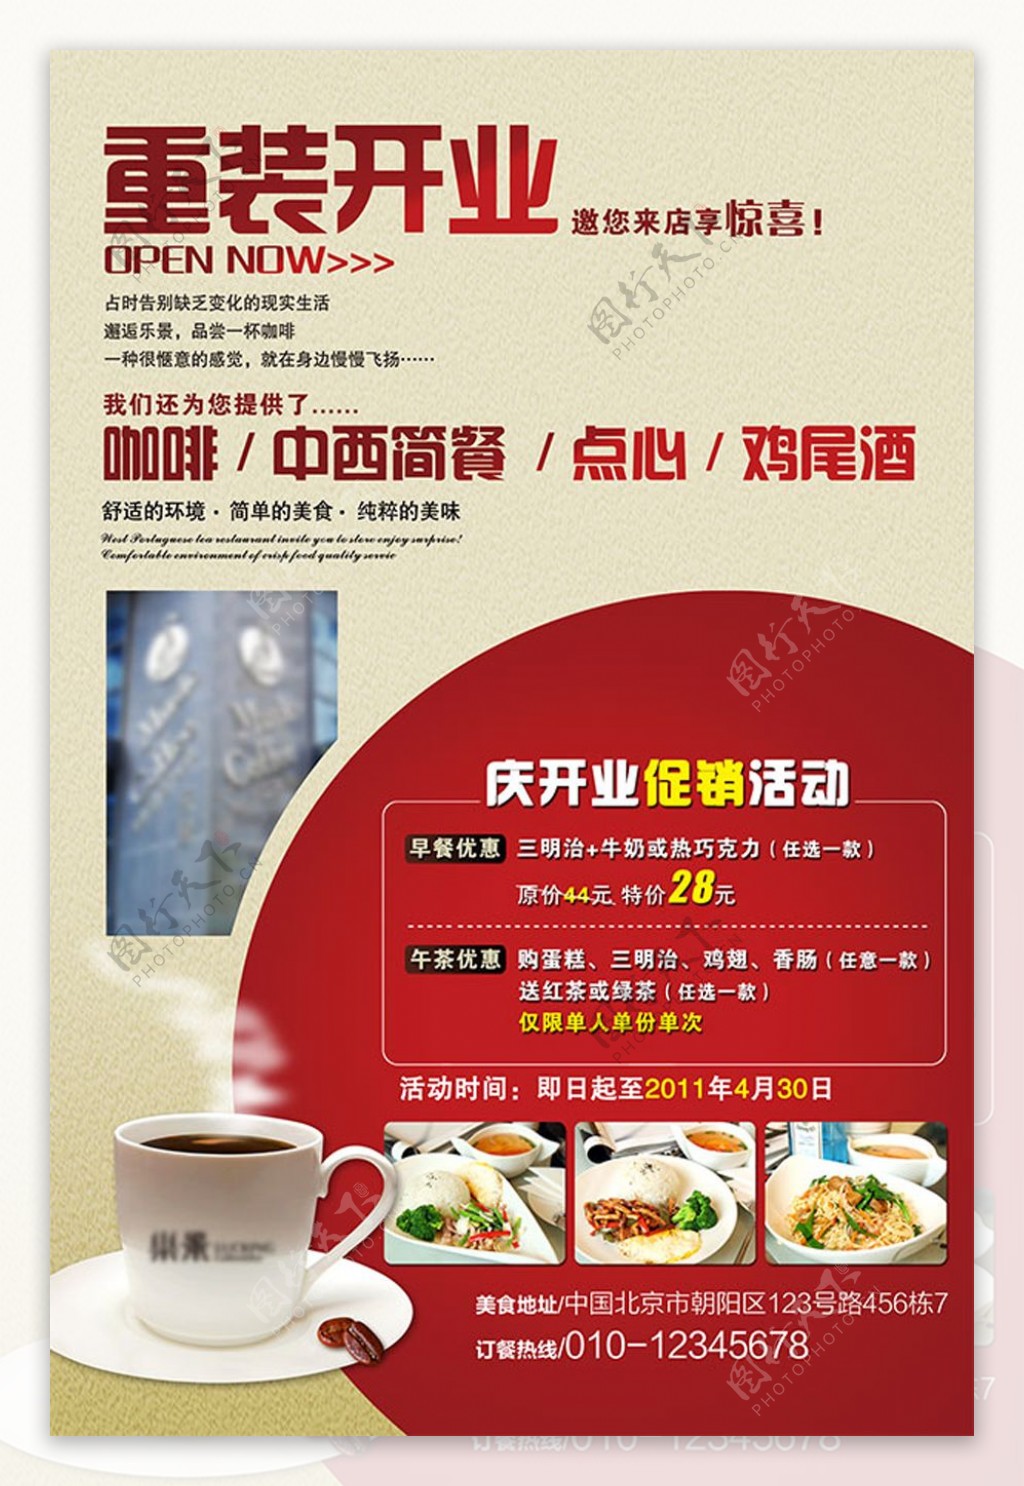 咖啡店开业促销宣传单PSD免费模板